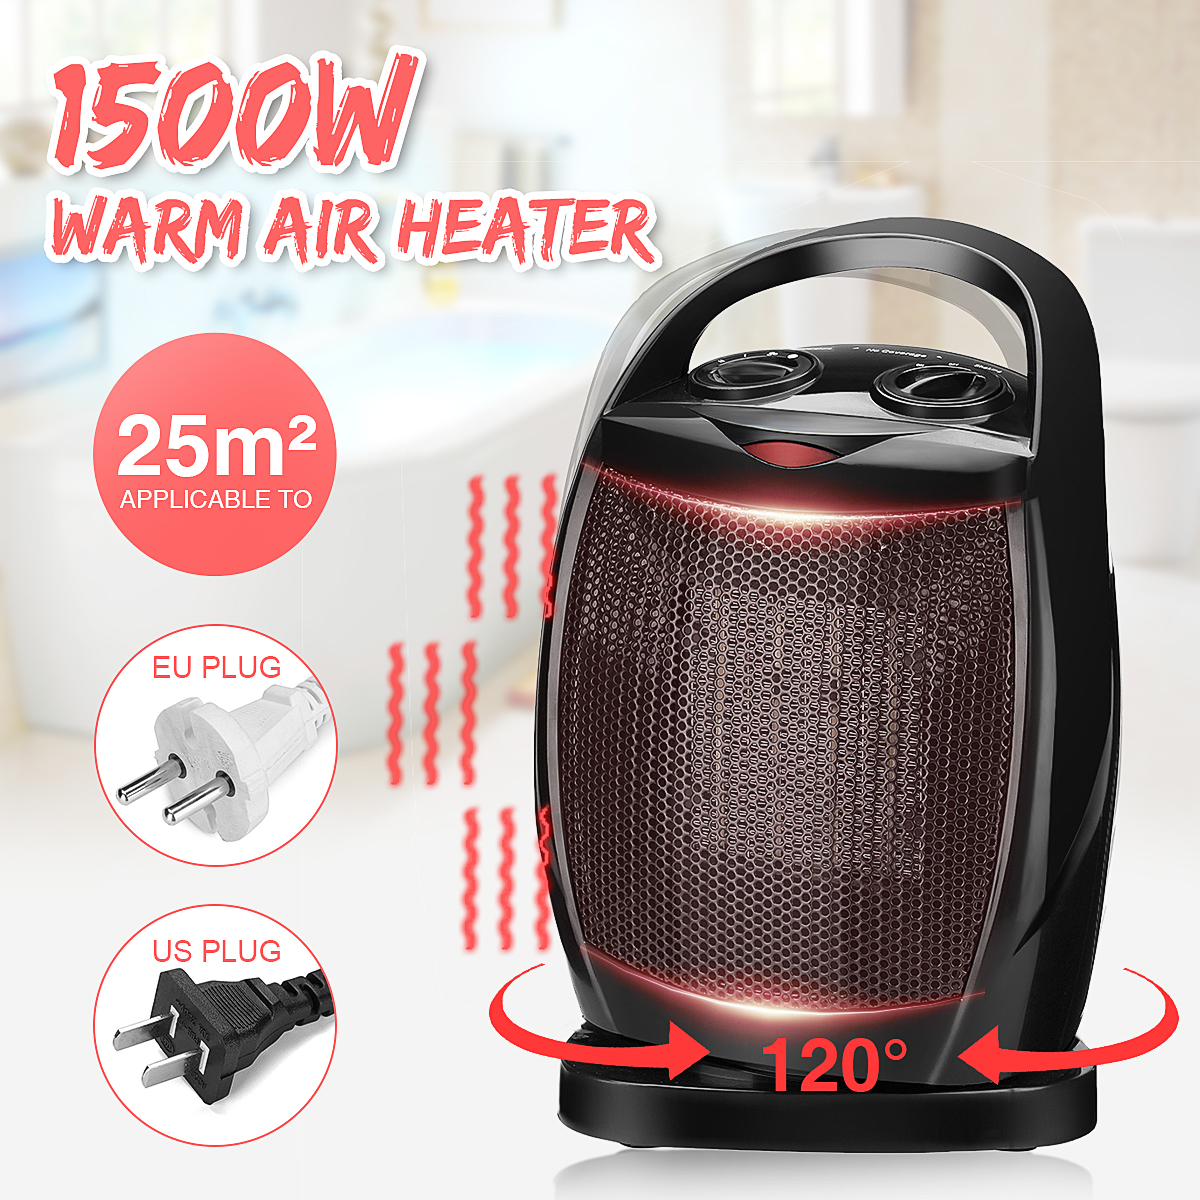 1500w air heater